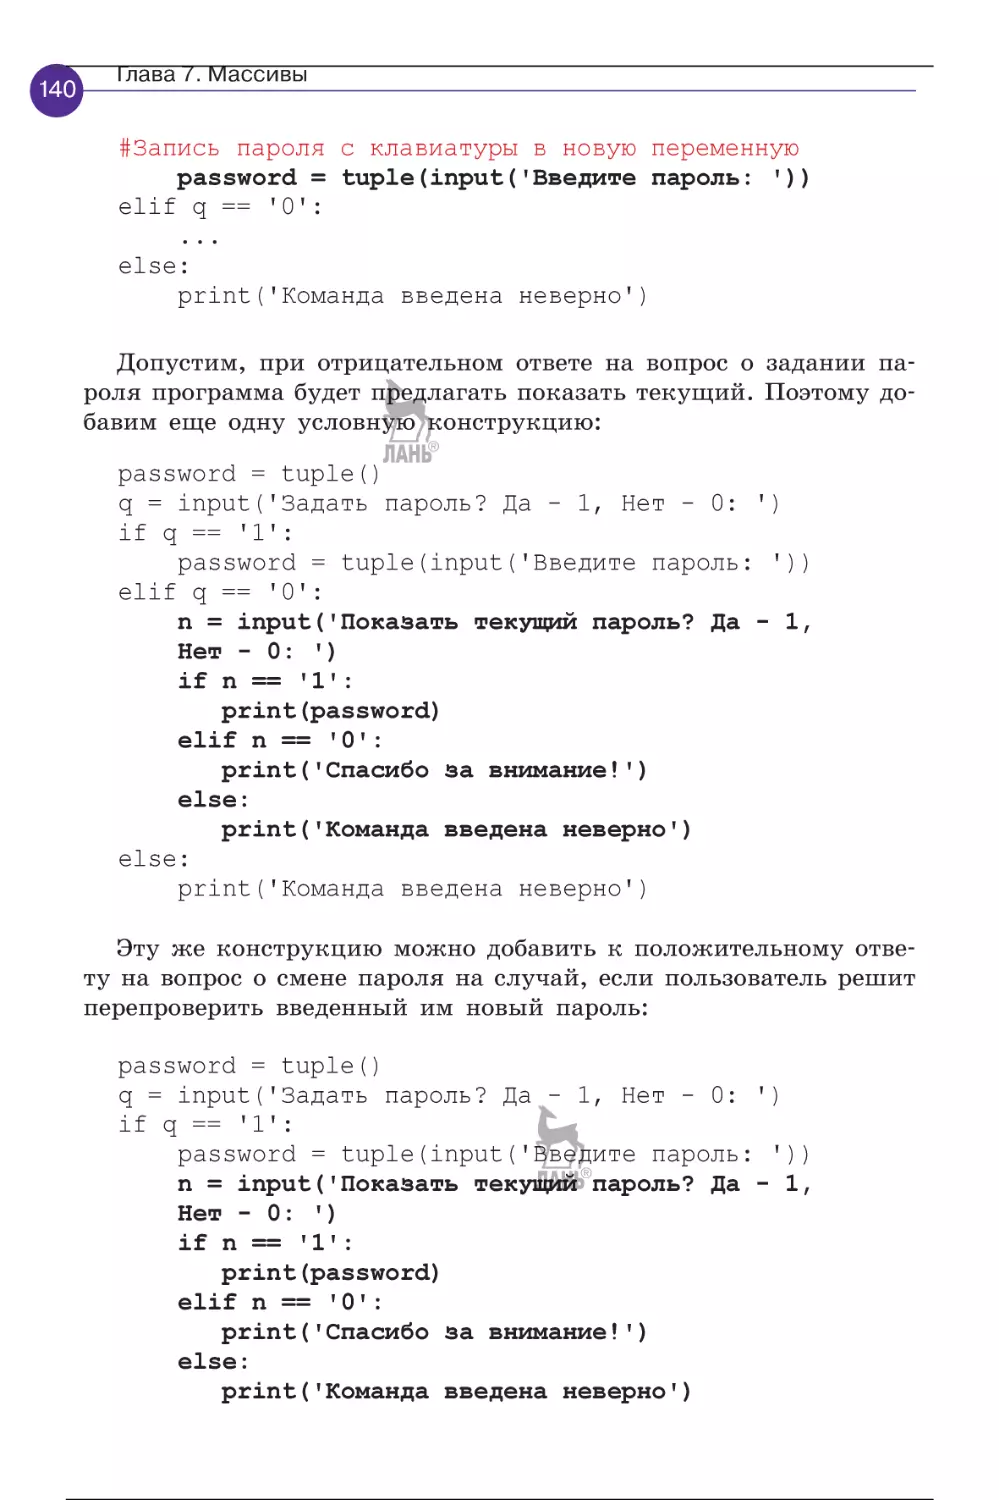 programmirovanie_na_python_pervye_sagi_141-160